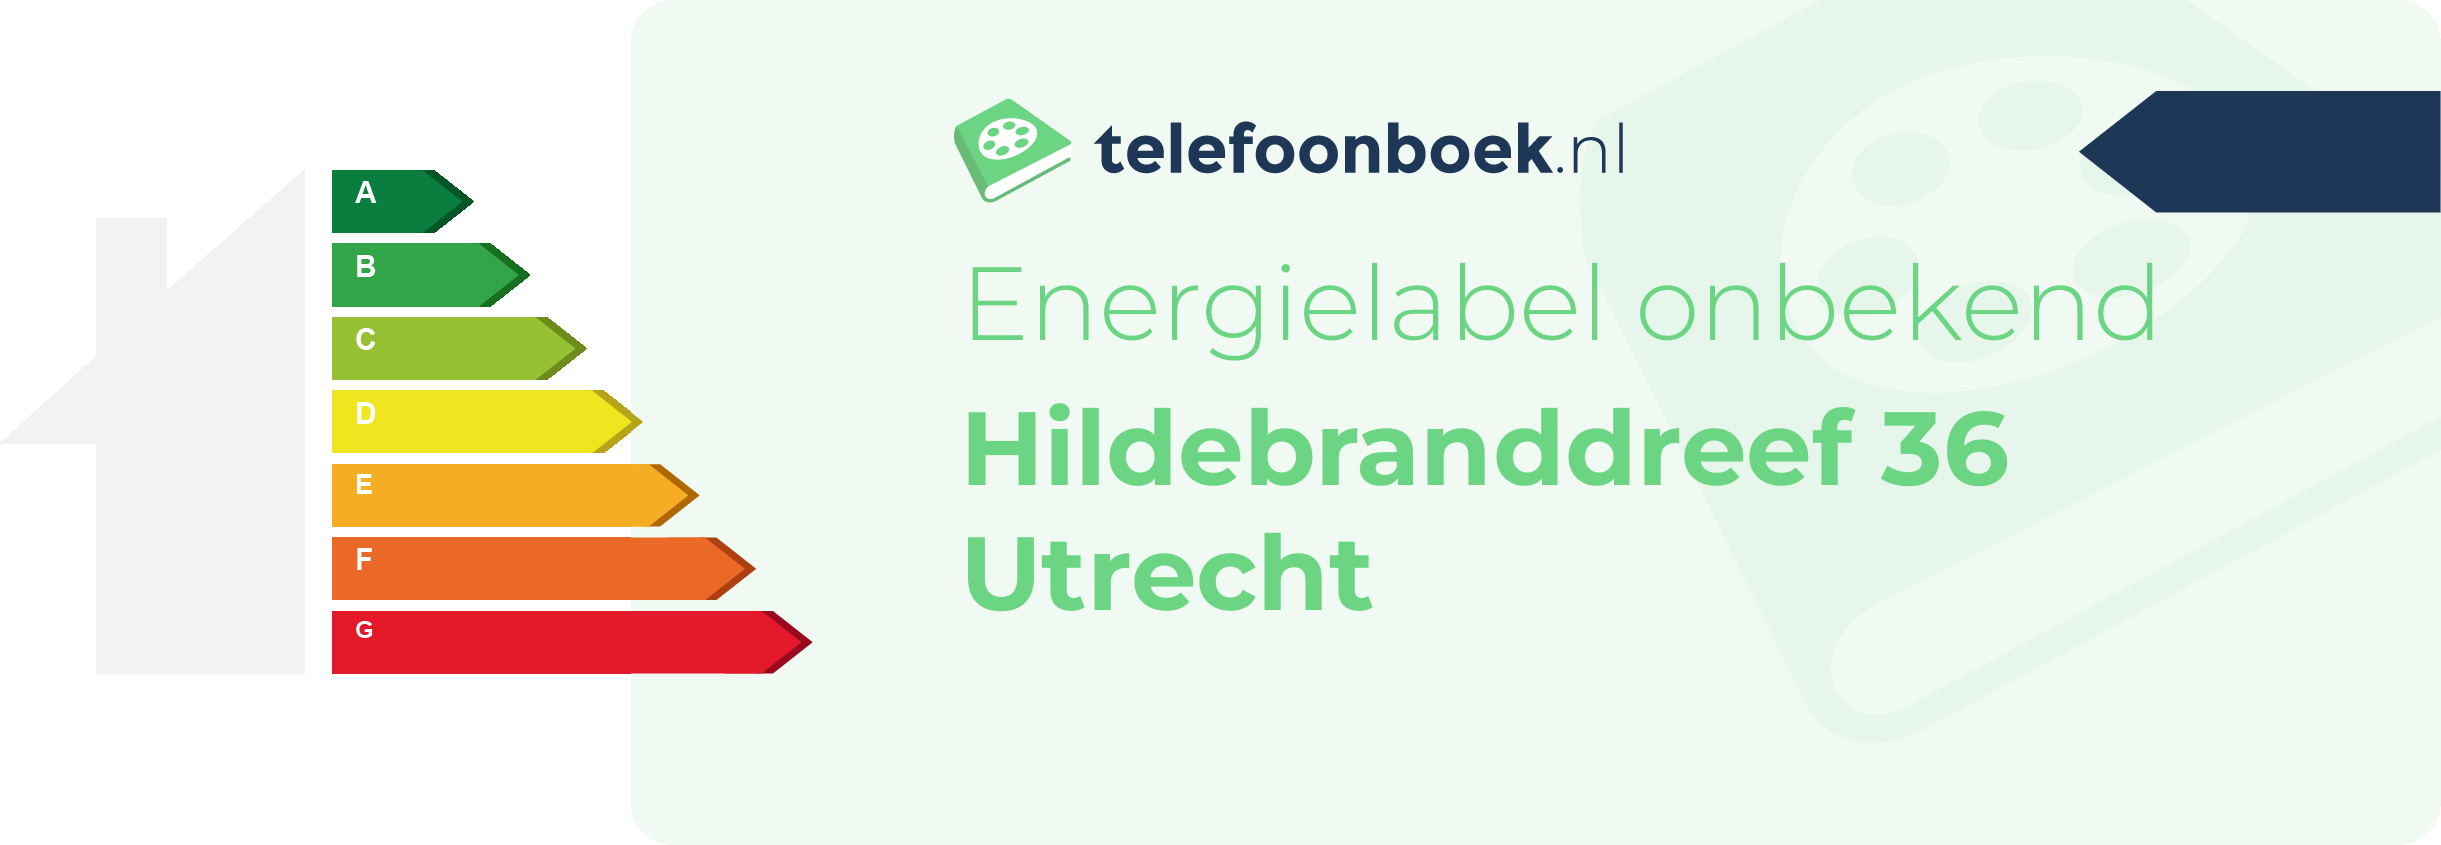 Energielabel Hildebranddreef 36 Utrecht